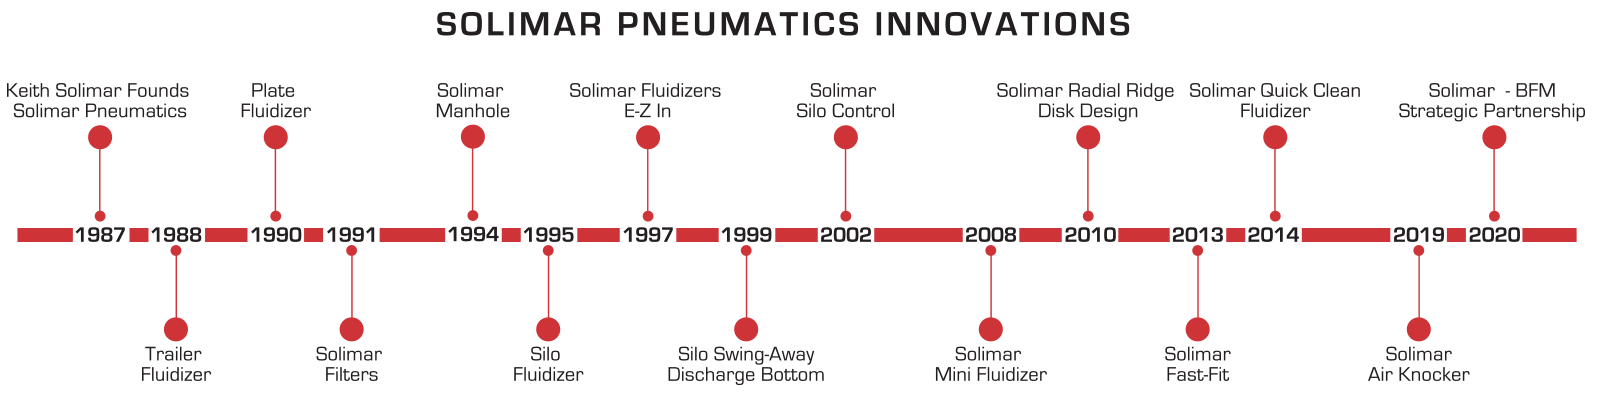 Solimar innovation timeline